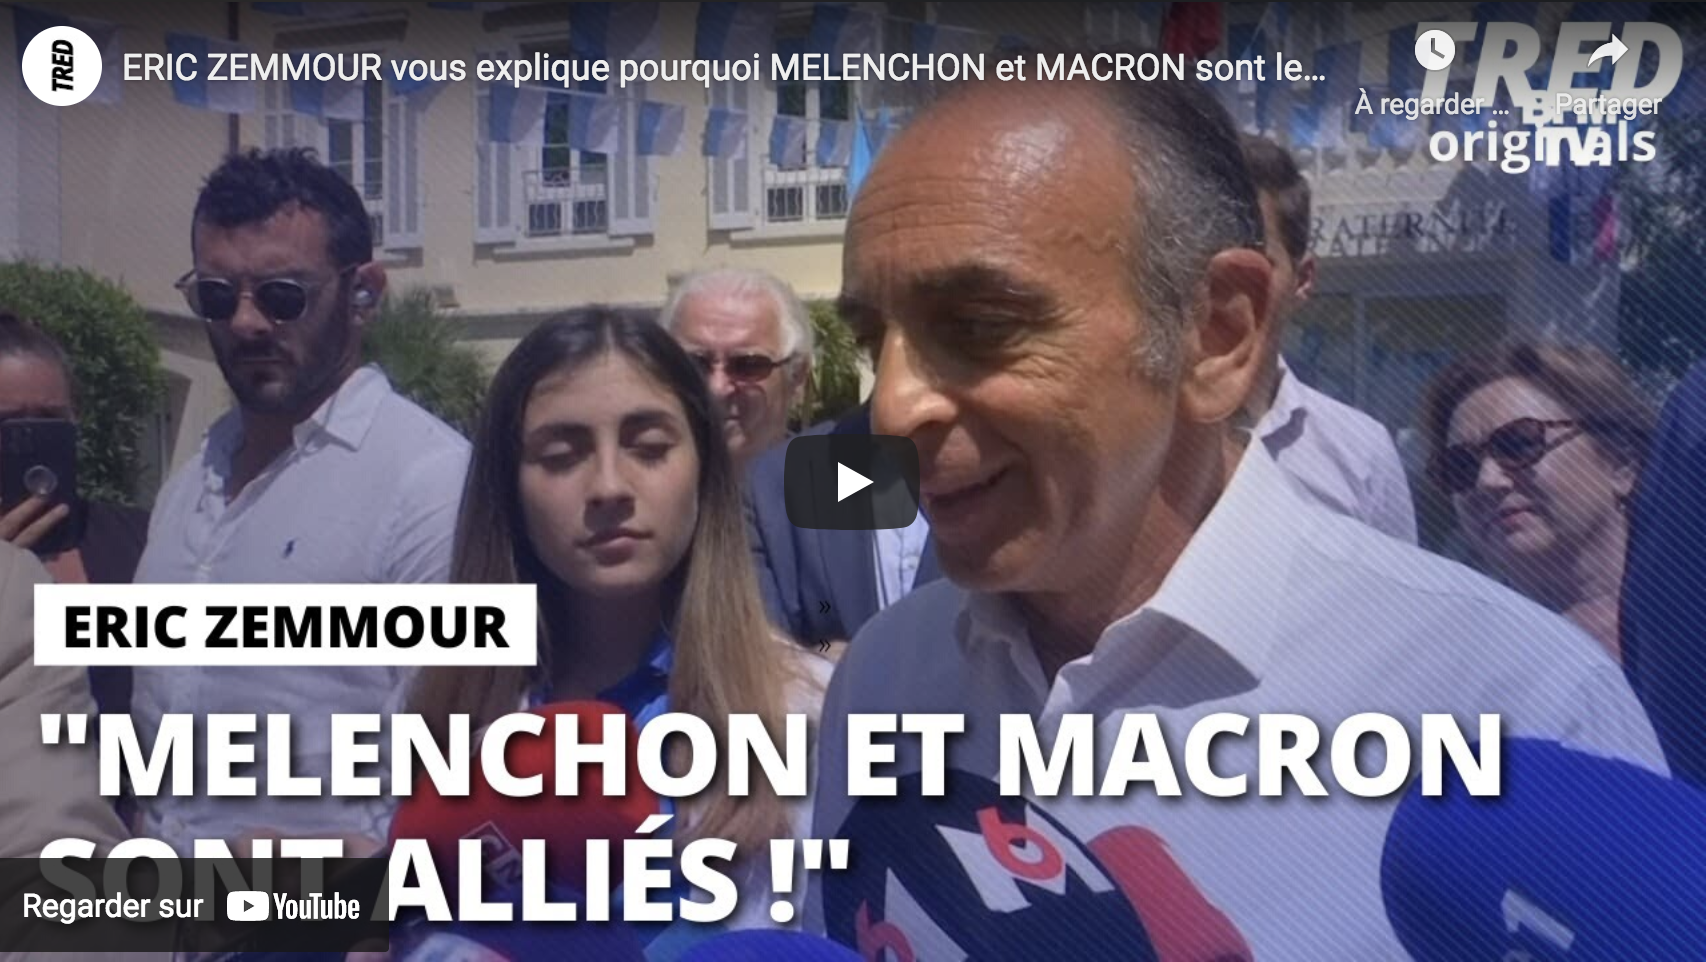 Éric Zemmour nous explique pourquoi Mélenchon et Macron sont en fait alliés (VIDÉO)